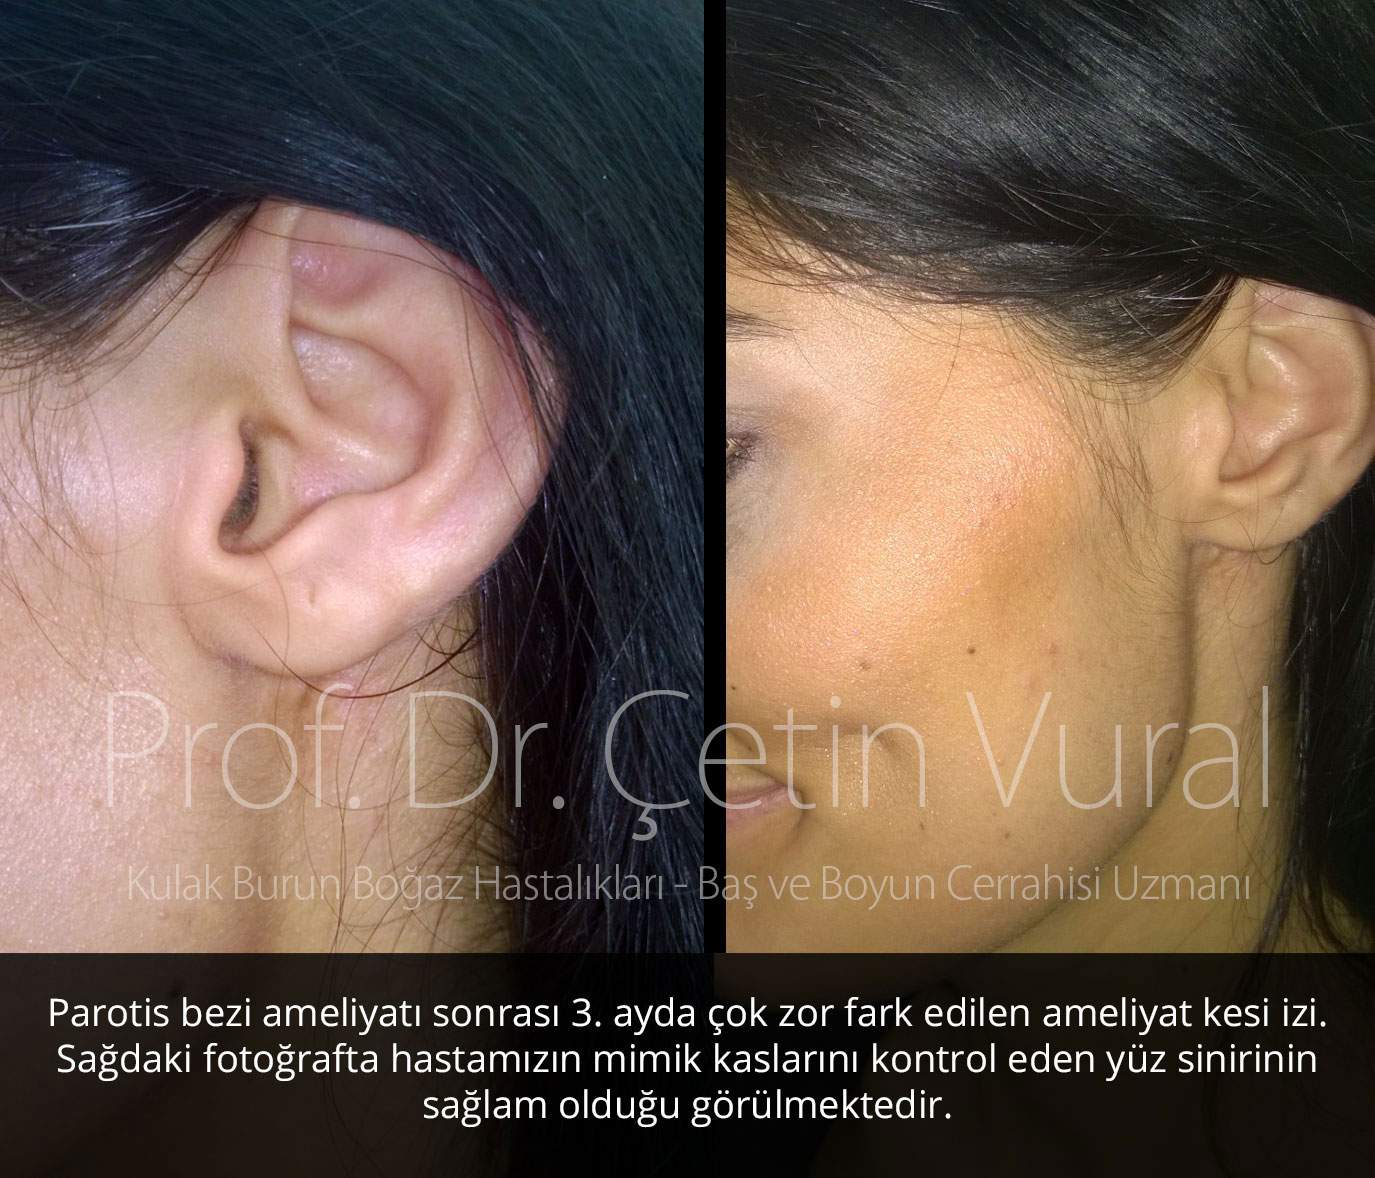 Parotis Ameliyatı sonrası İz 02 - Prof. Dr. Çetin Vural